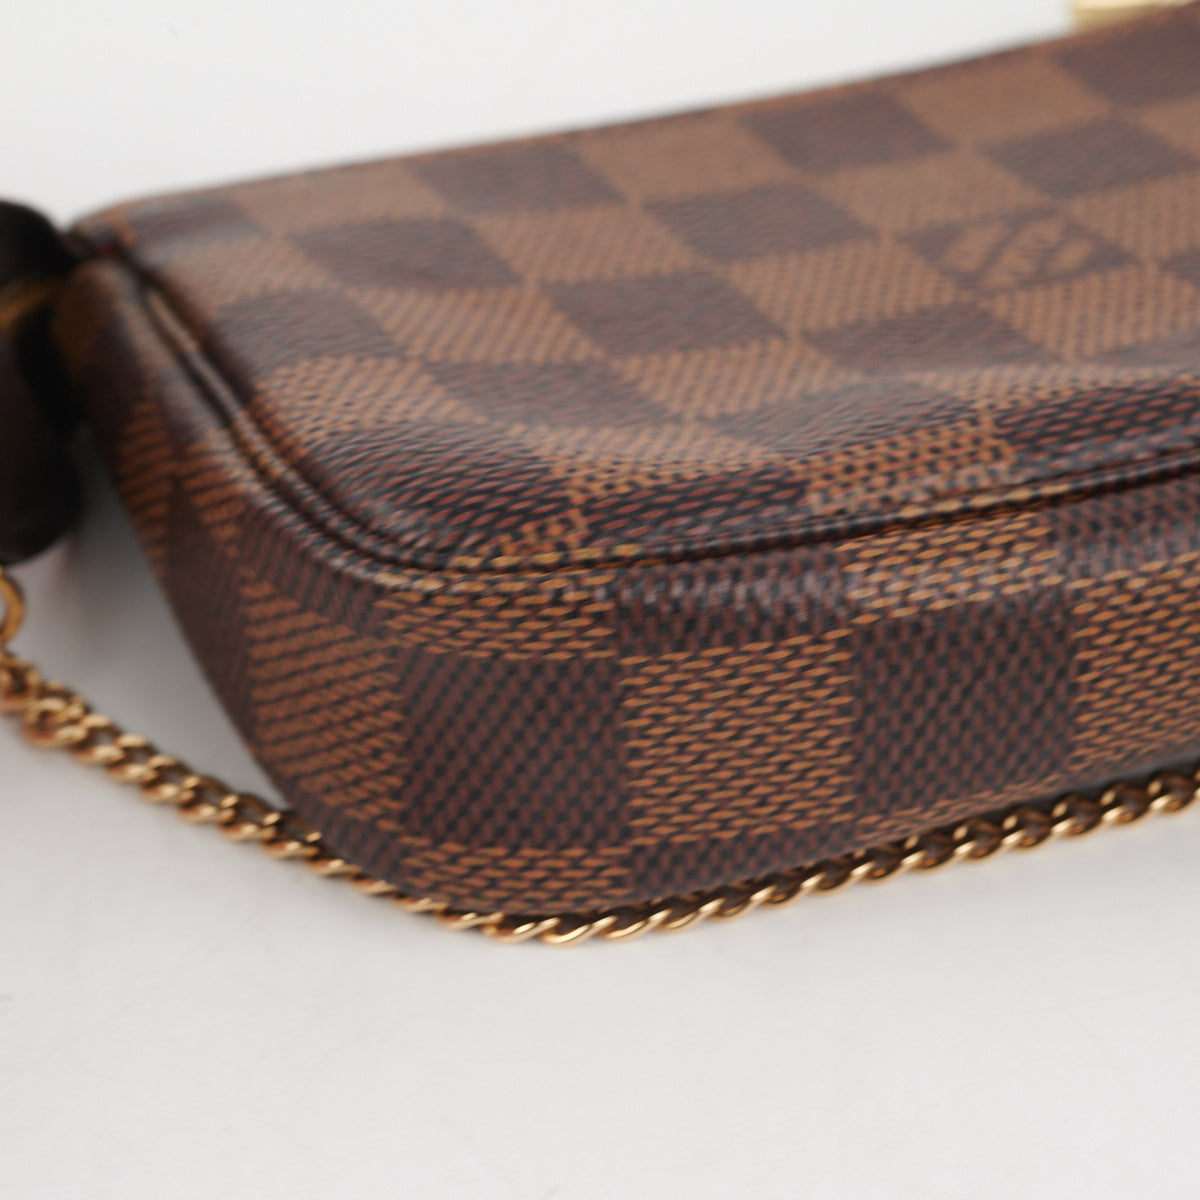 Bags, Louis Vuitton Mini Pochette Damier Ebene Authentic